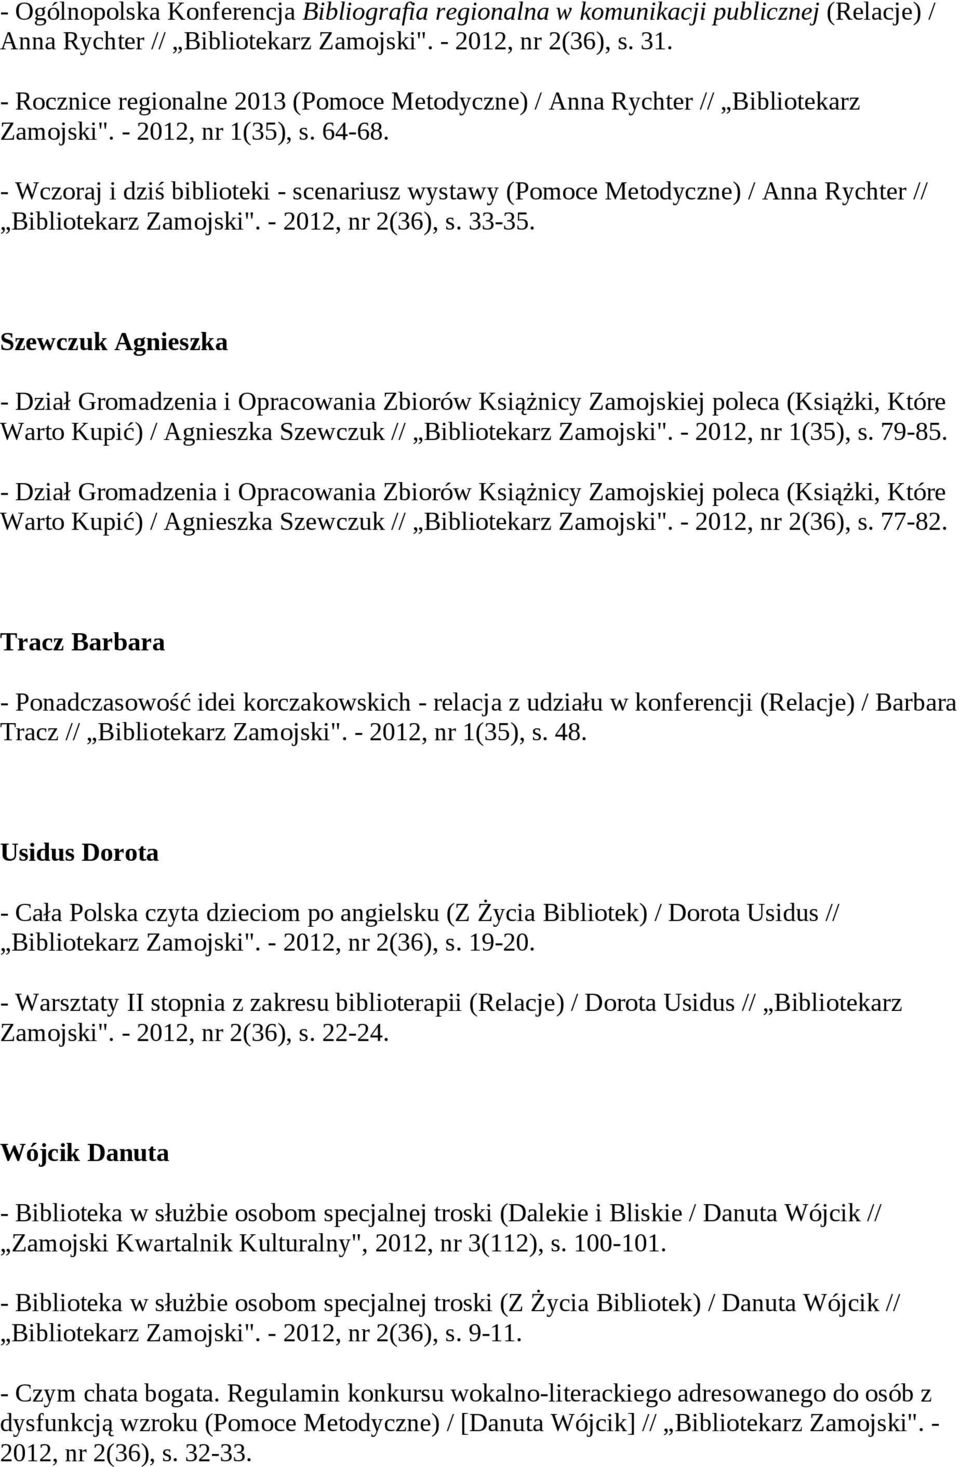 - Wczoraj i dziś biblioteki - scenariusz wystawy (Pomoce Metodyczne) / Anna Rychter // Bibliotekarz Zamojski". - 2012, nr 2(36), s. 33-35.